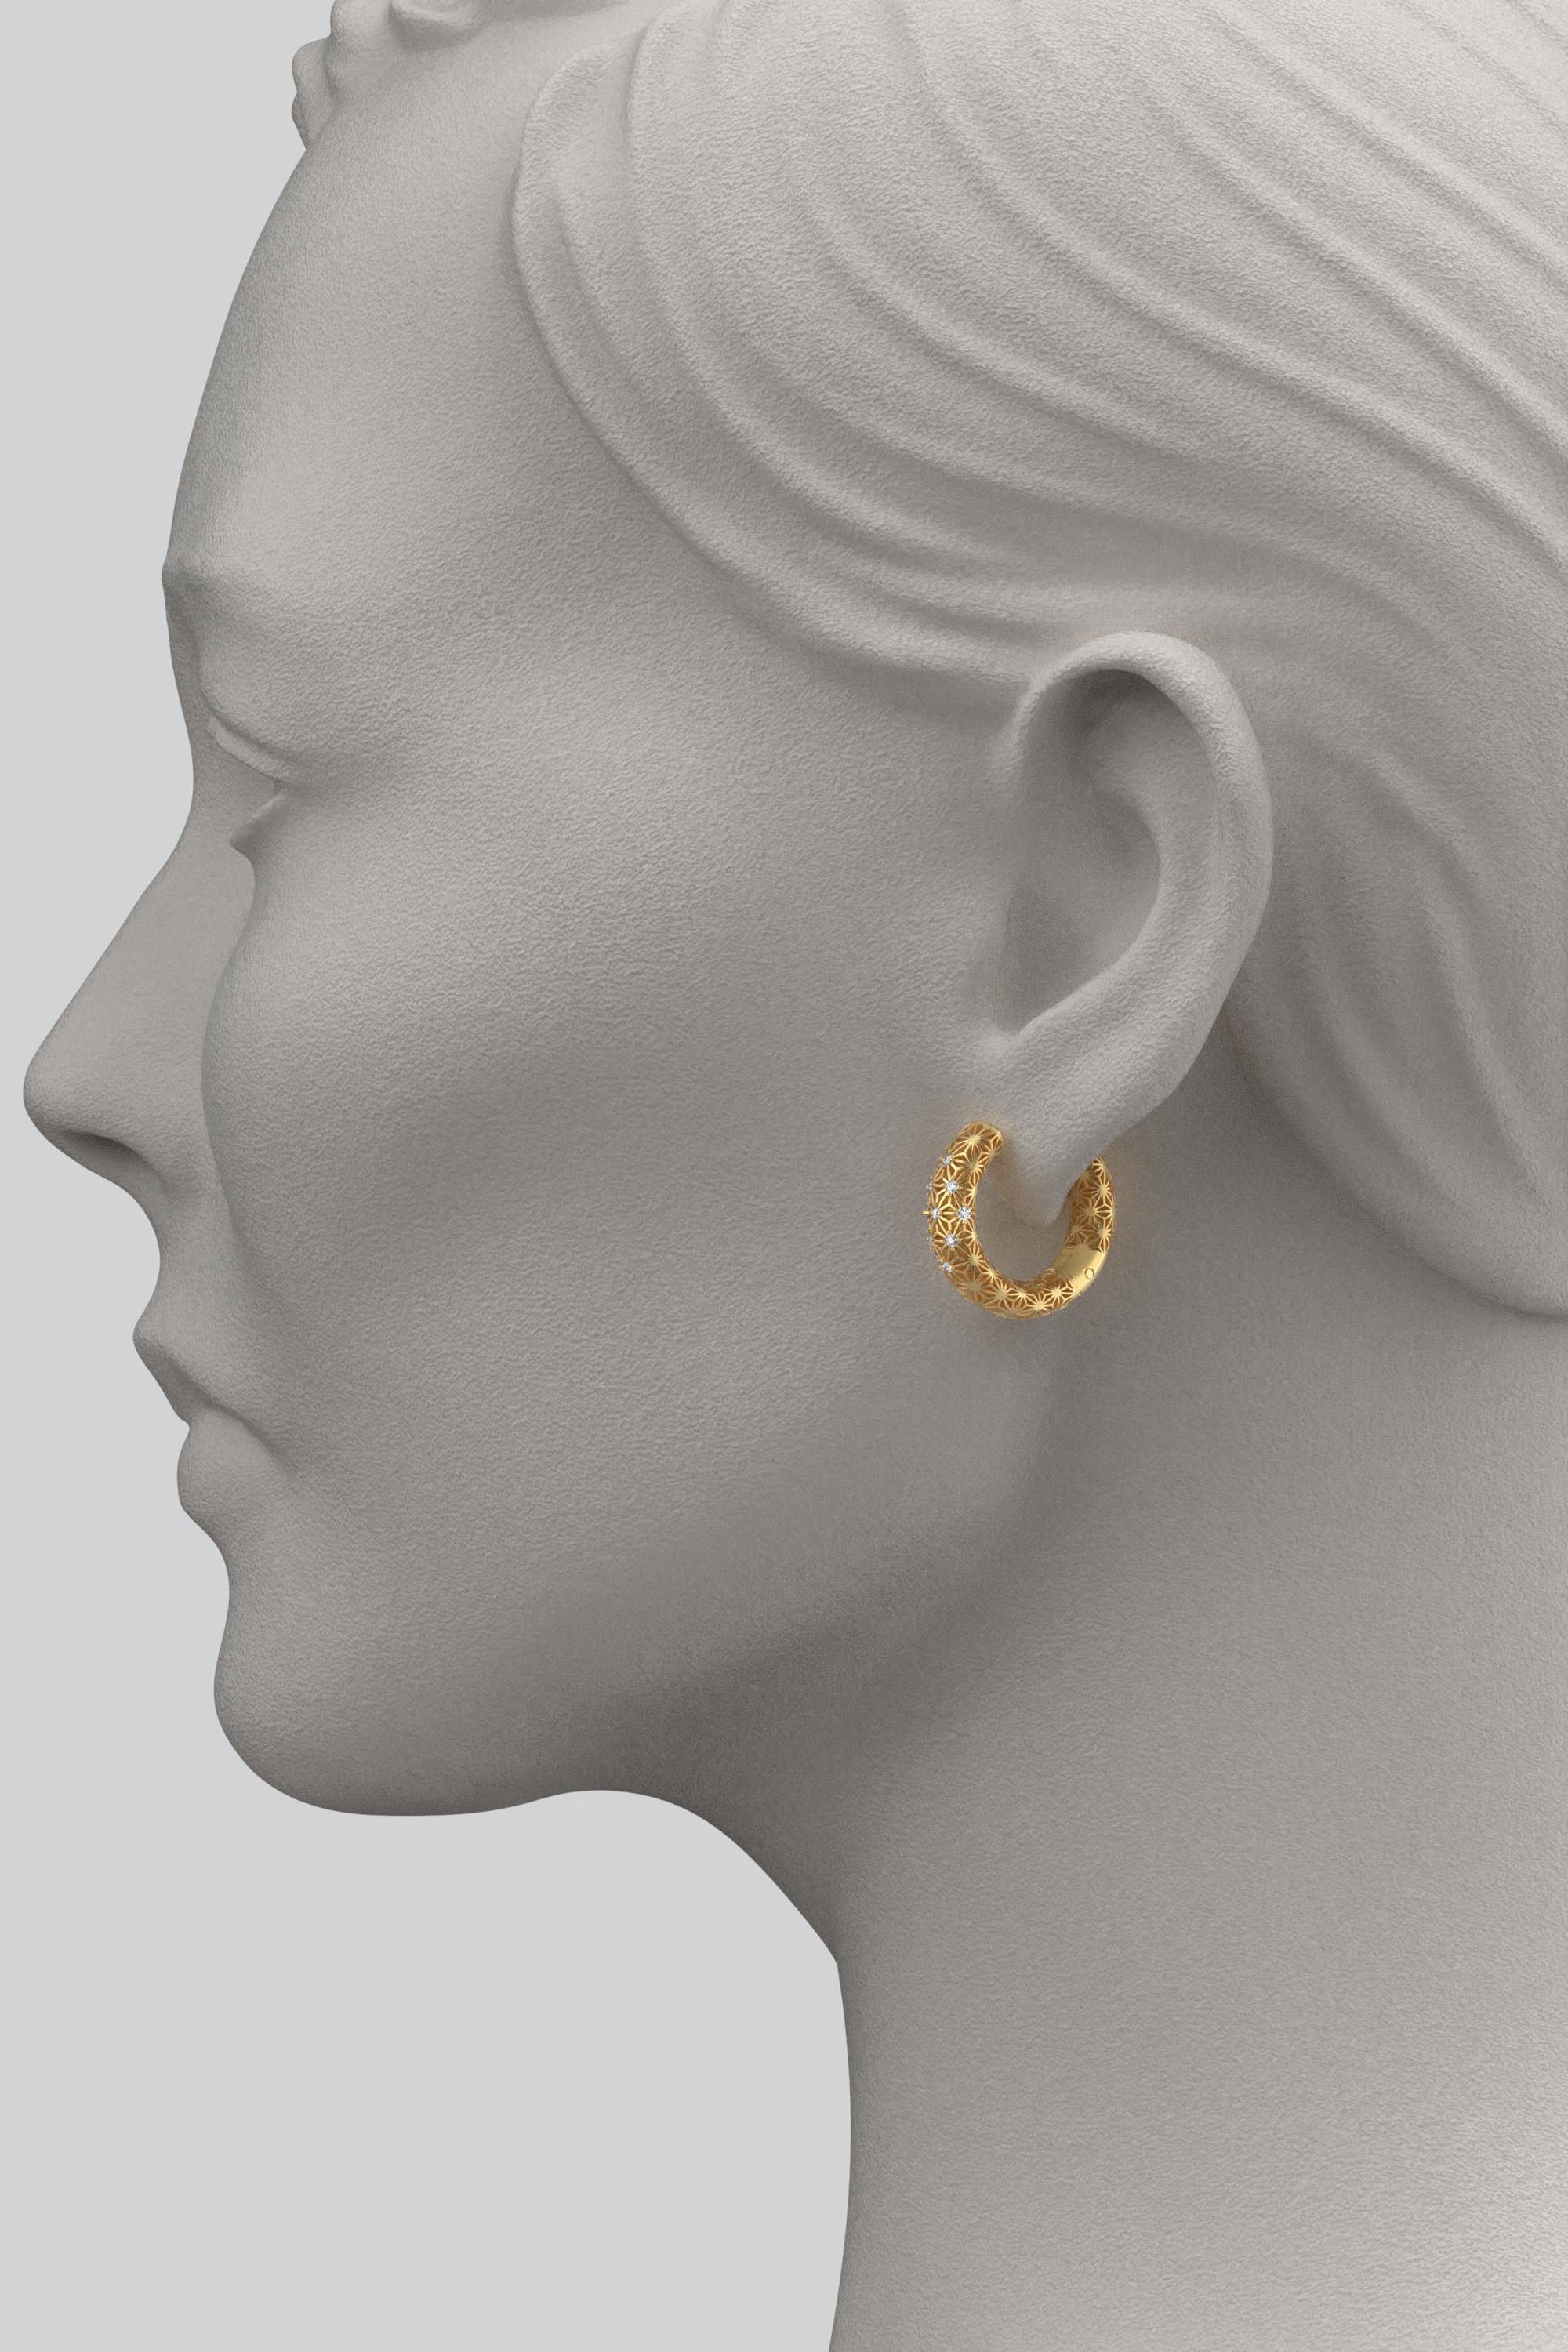 Women's or Men's Italian 18K Gold Diamond Hoop Earrings Sashiko Pattern - Oltremare Gioielli For Sale